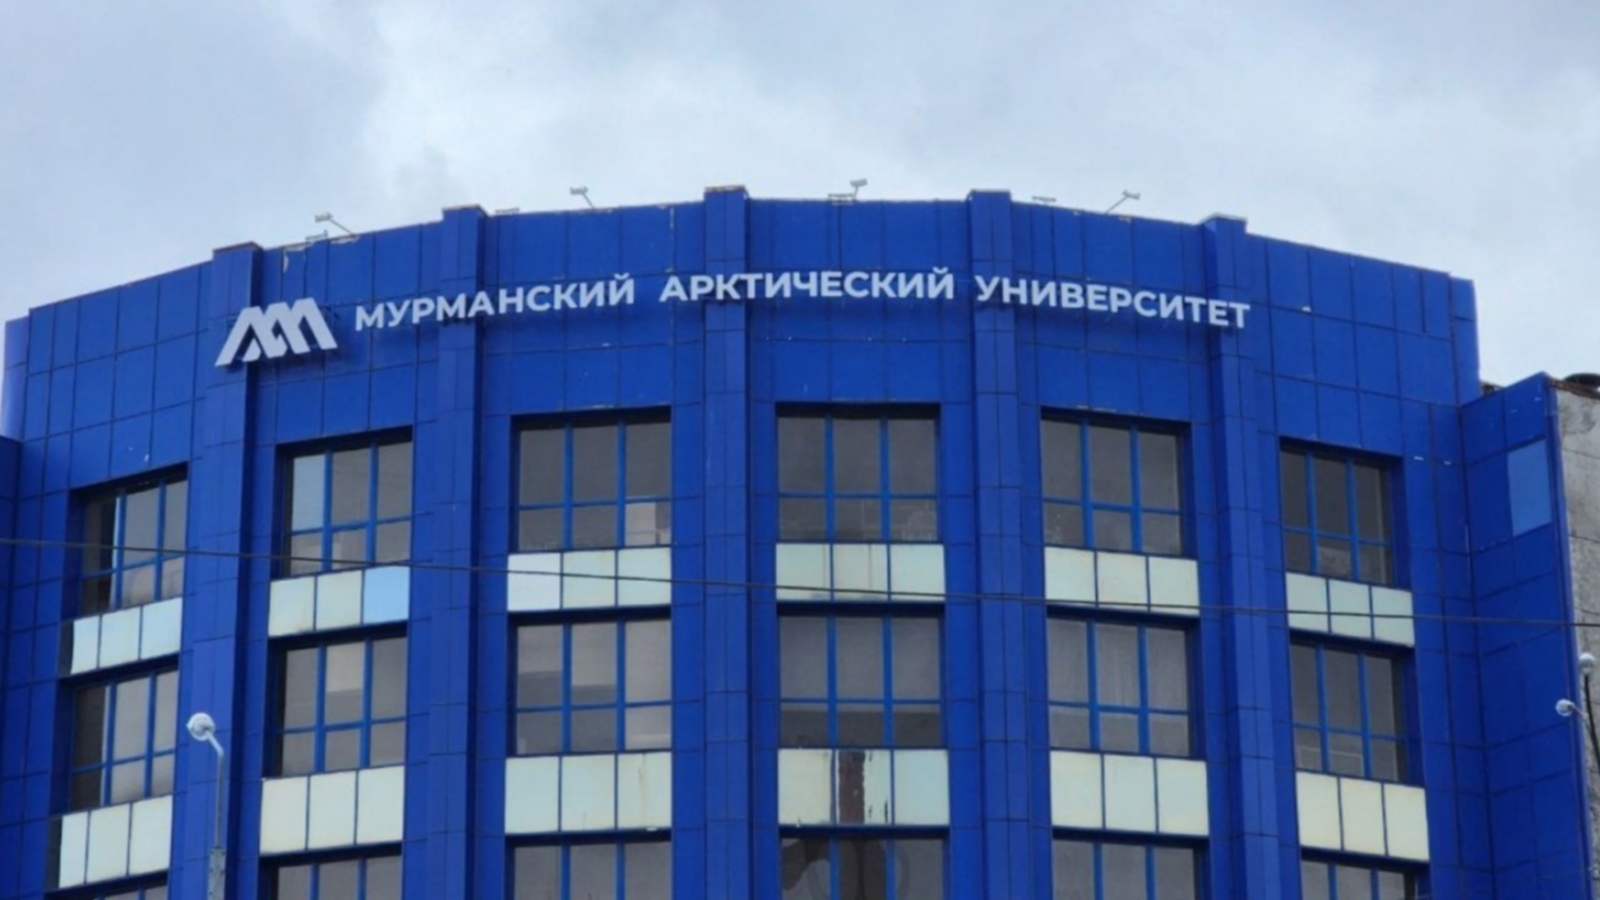 Мурманский арктический университет получит 10 миллионов рублей